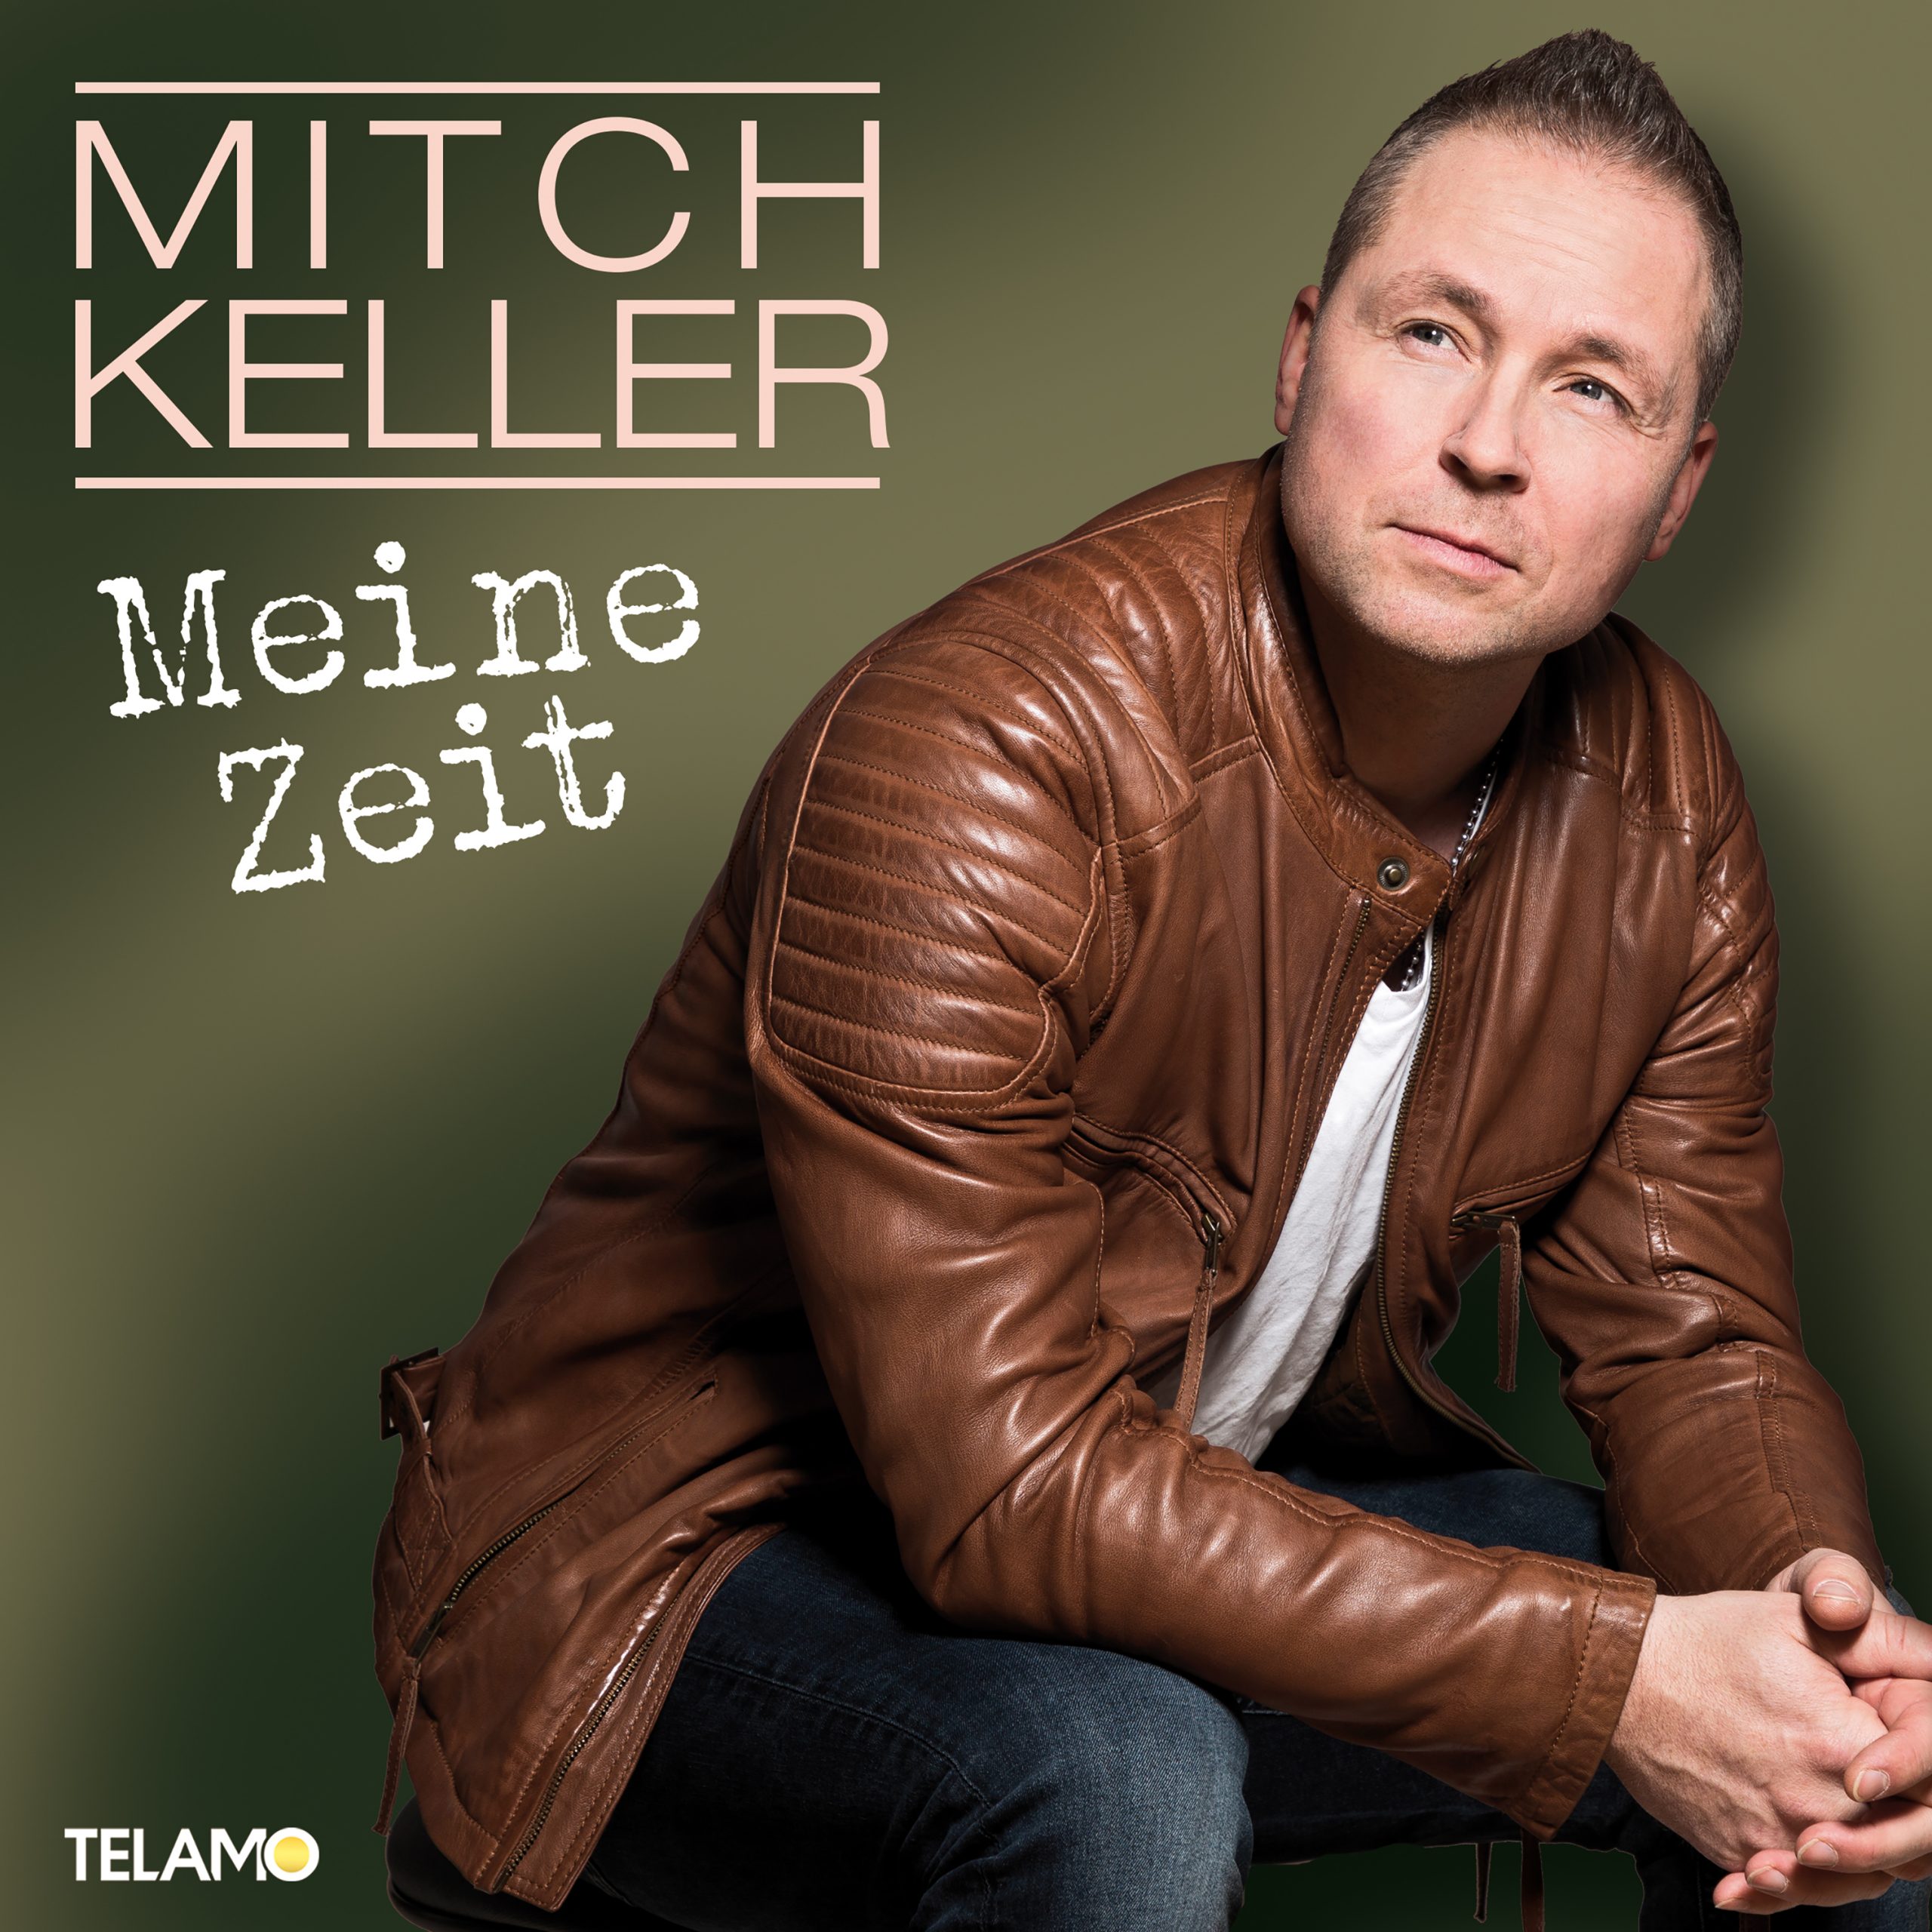 Mitch Keller - Meine Zeit (2021) 